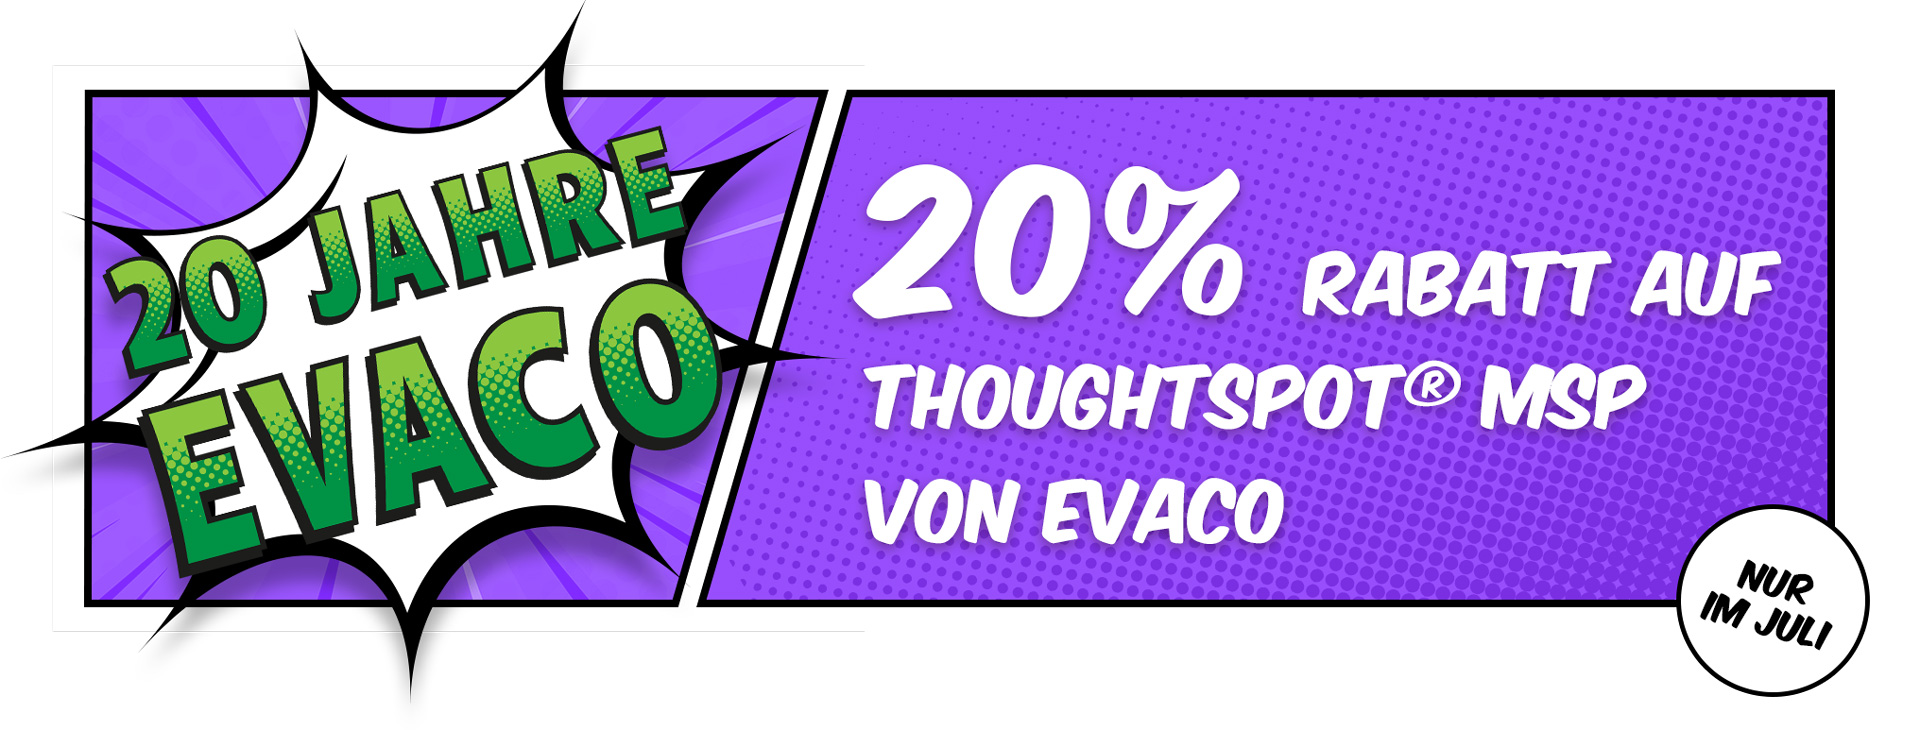 20 Jahre EVACO: 20% auf ThoughtSpot MSP von EVACO